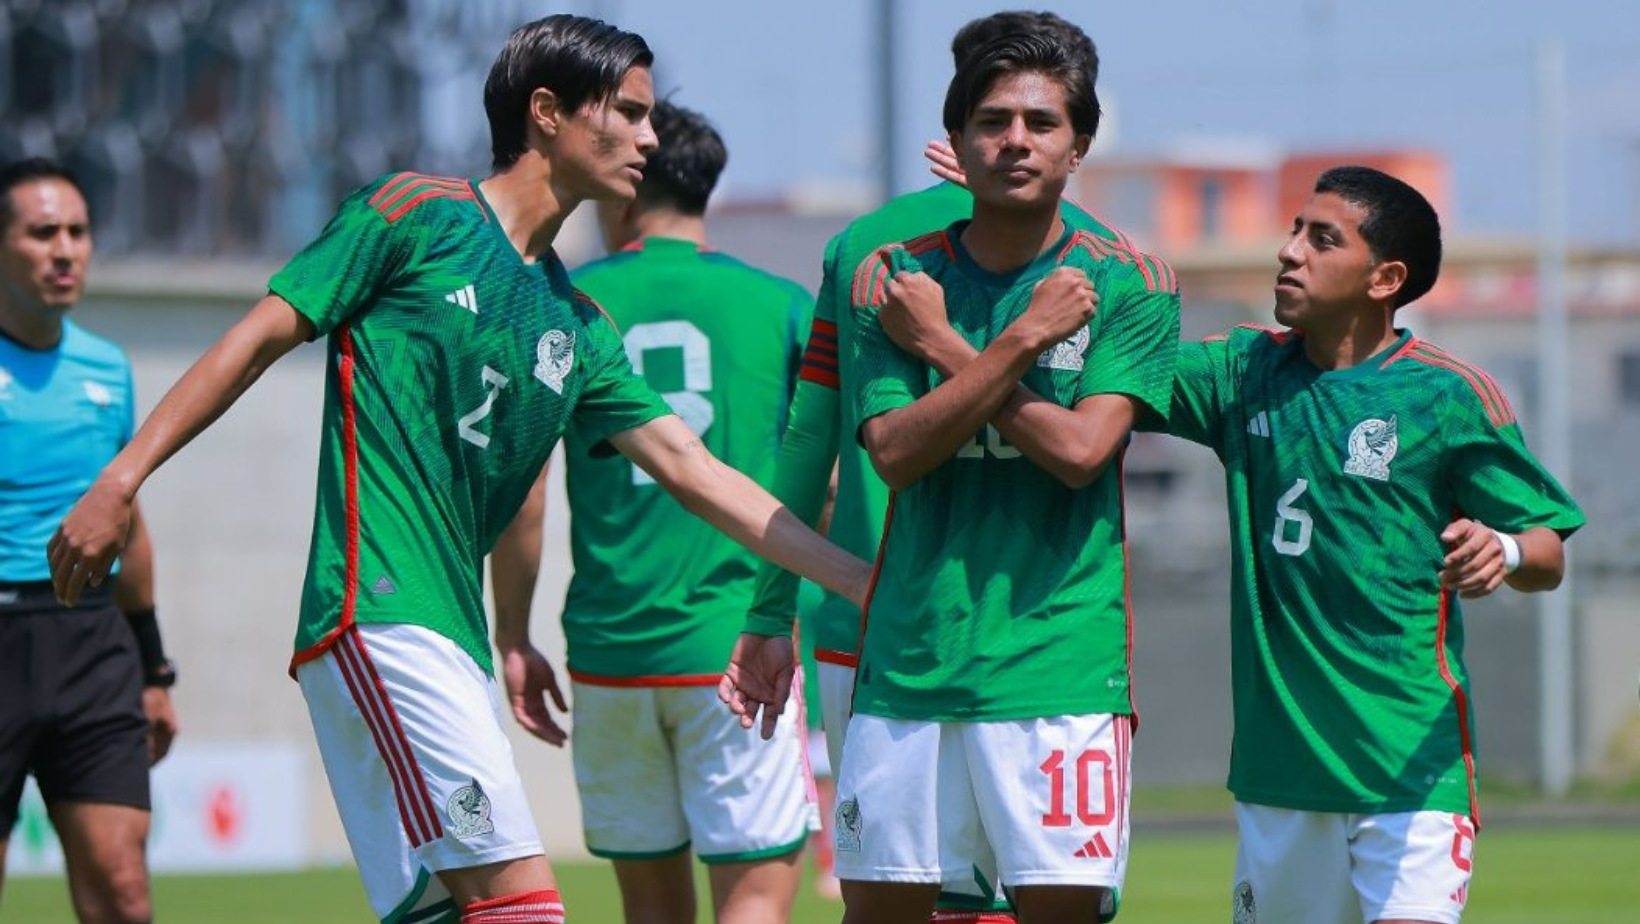 La Sub-20 de México derrotó 6-0 a Honduras en juego amistoso